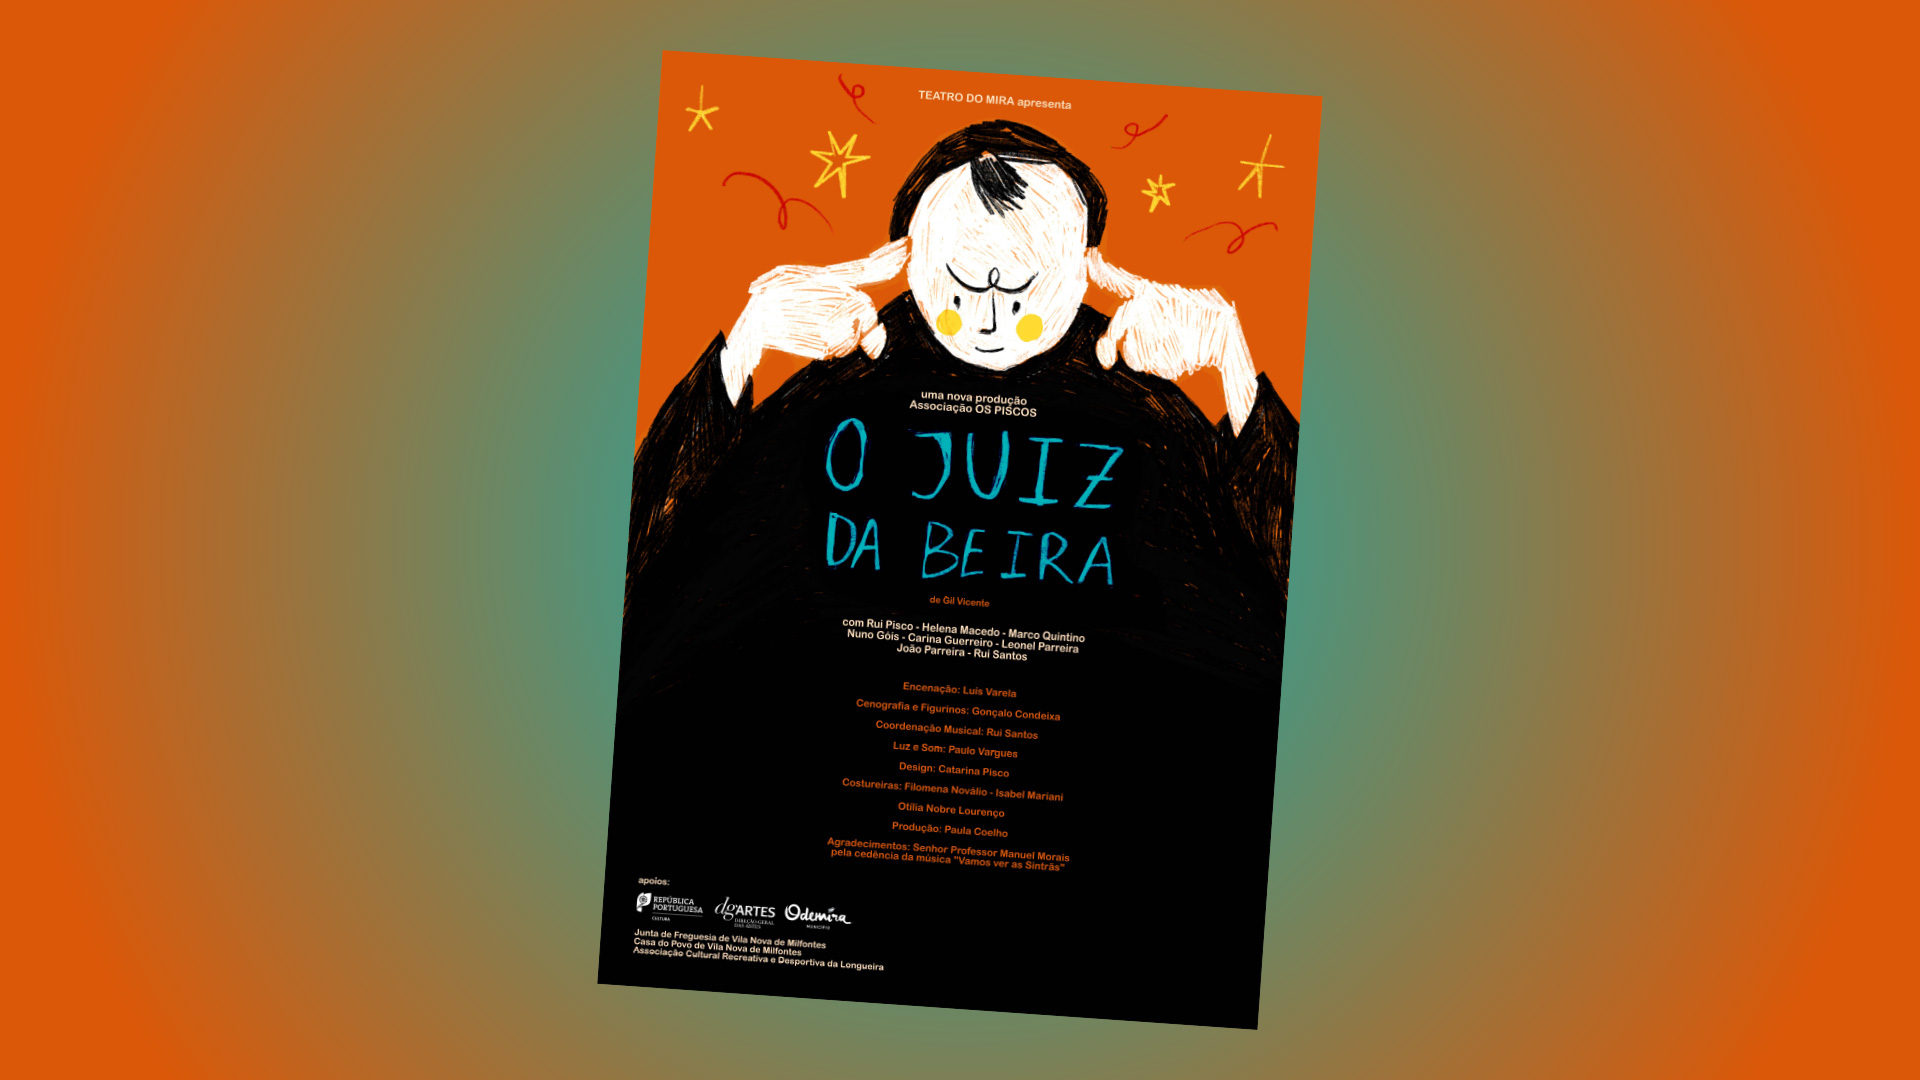 Teatro do Mira apresenta a peça “O Juiz da Beira”